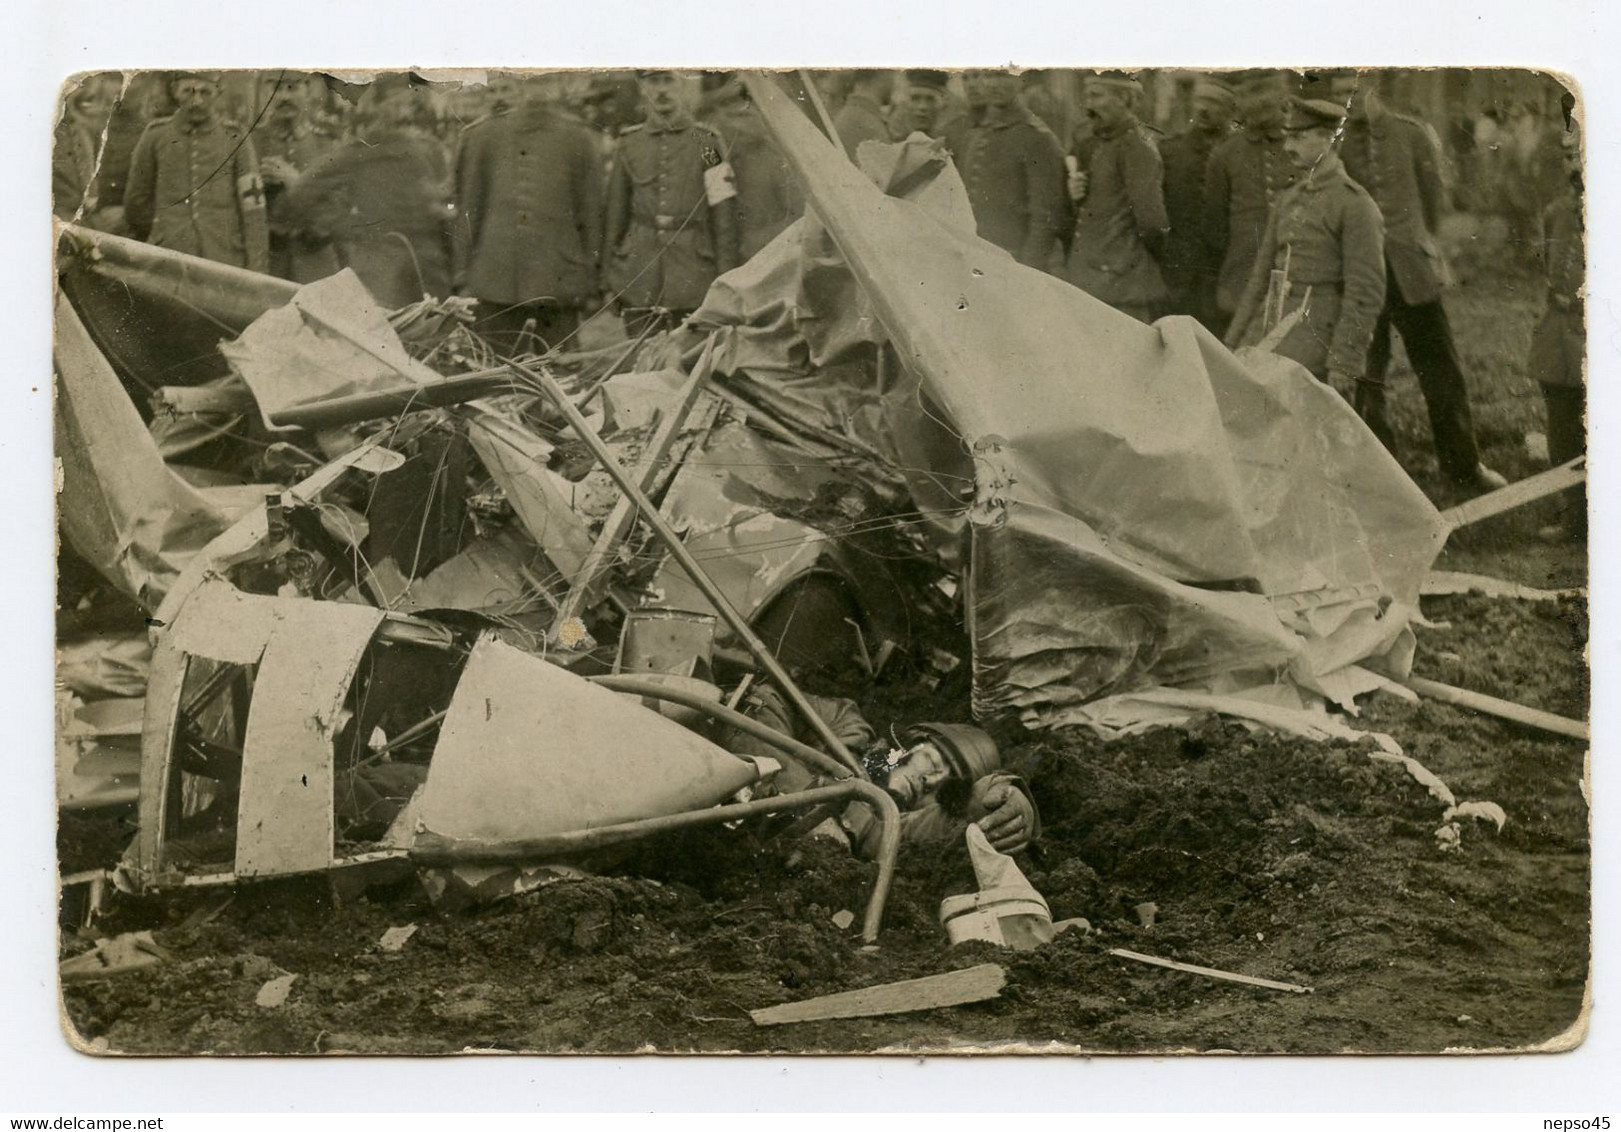 Carte Photo De Guerre 1914-18.Aviation. Aviateur. Avion Abattu.Pilote Mort.Cadavre D'un Soldat,voir Photos - Incidenti